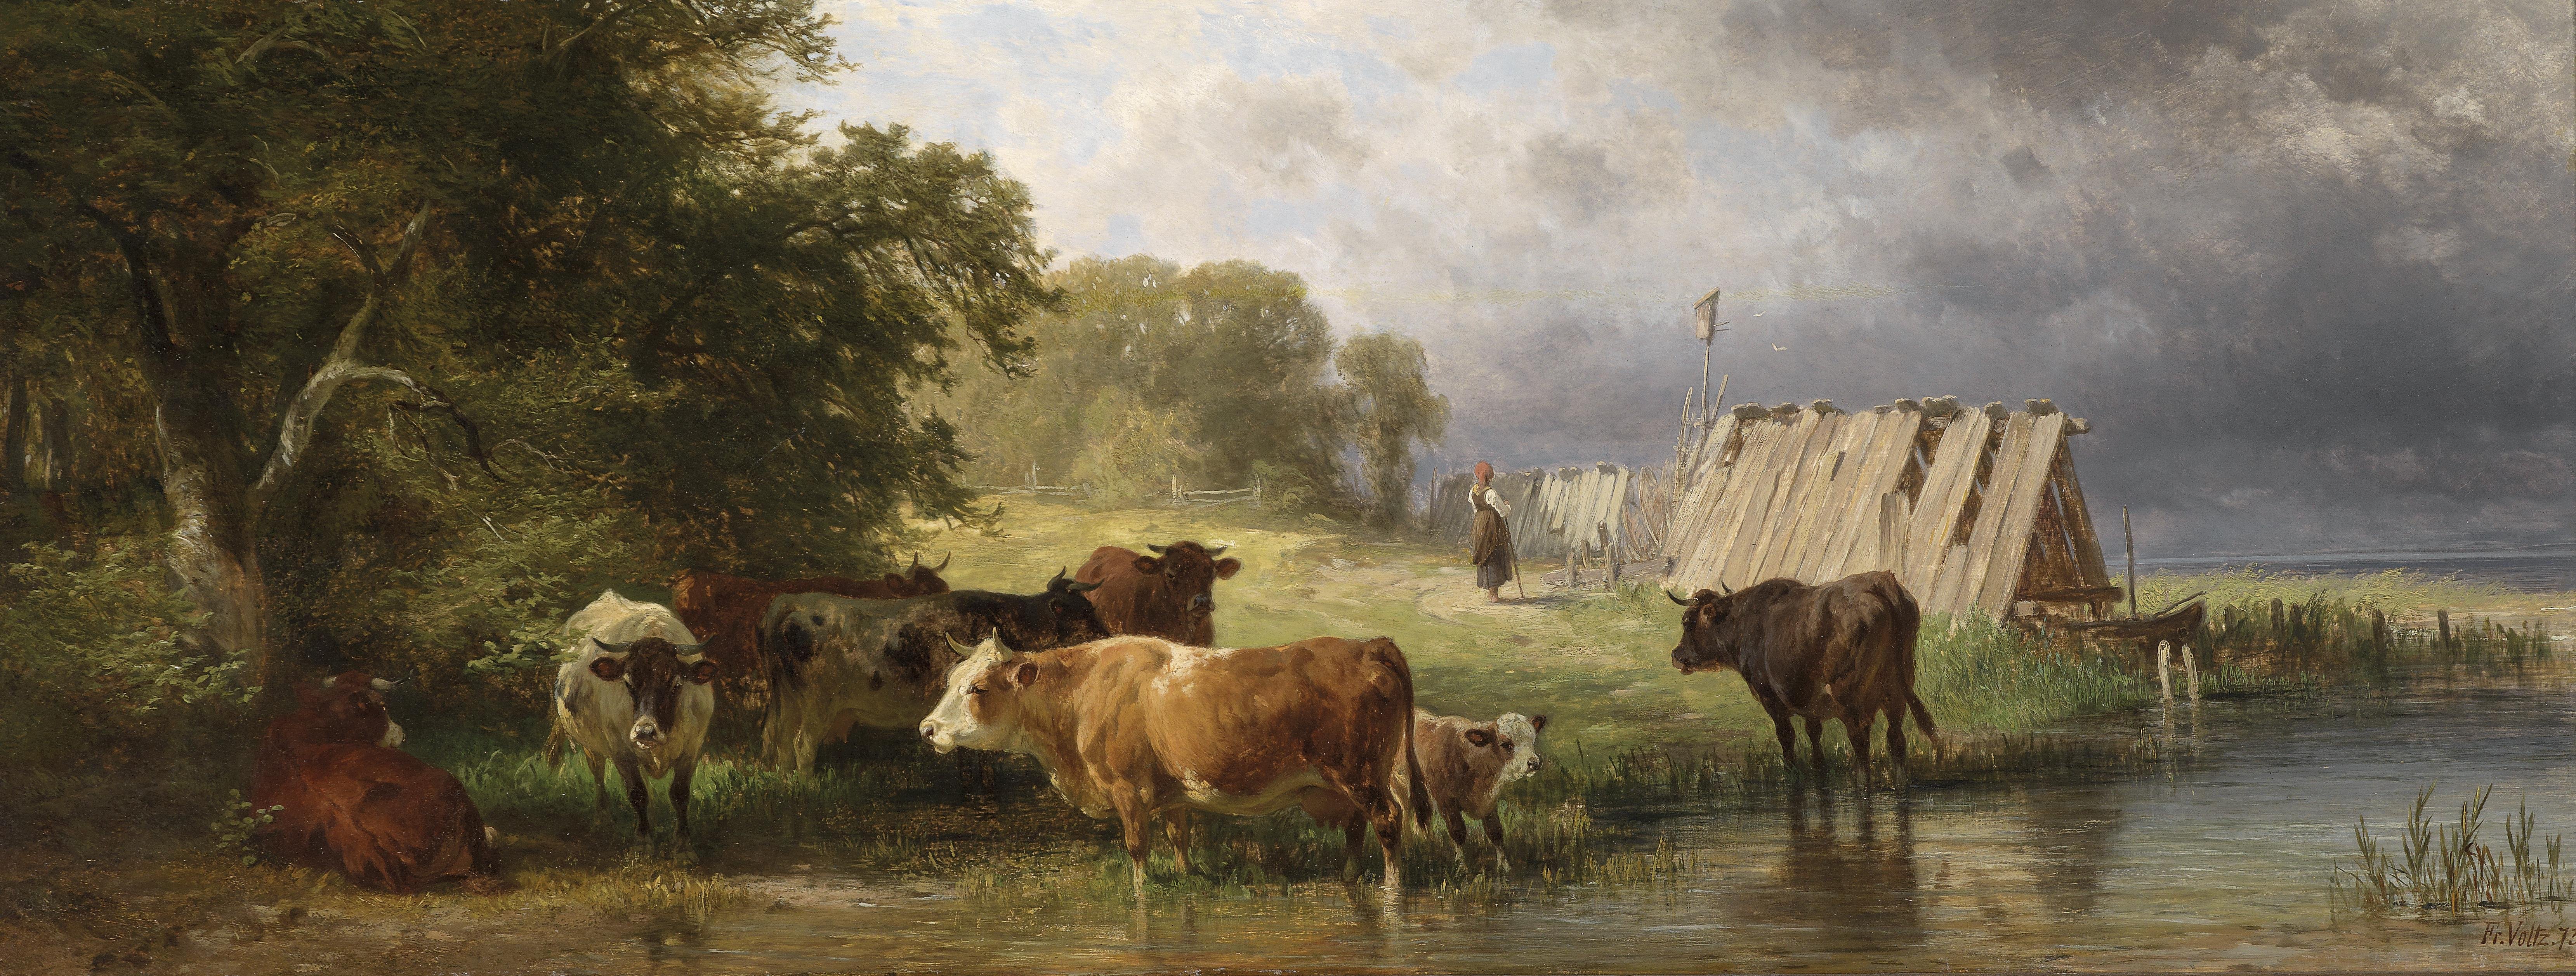 Он закричал пастухам чтобы они скорее. Коровы на водопое (с картины а.Степанова, 1858-1923).